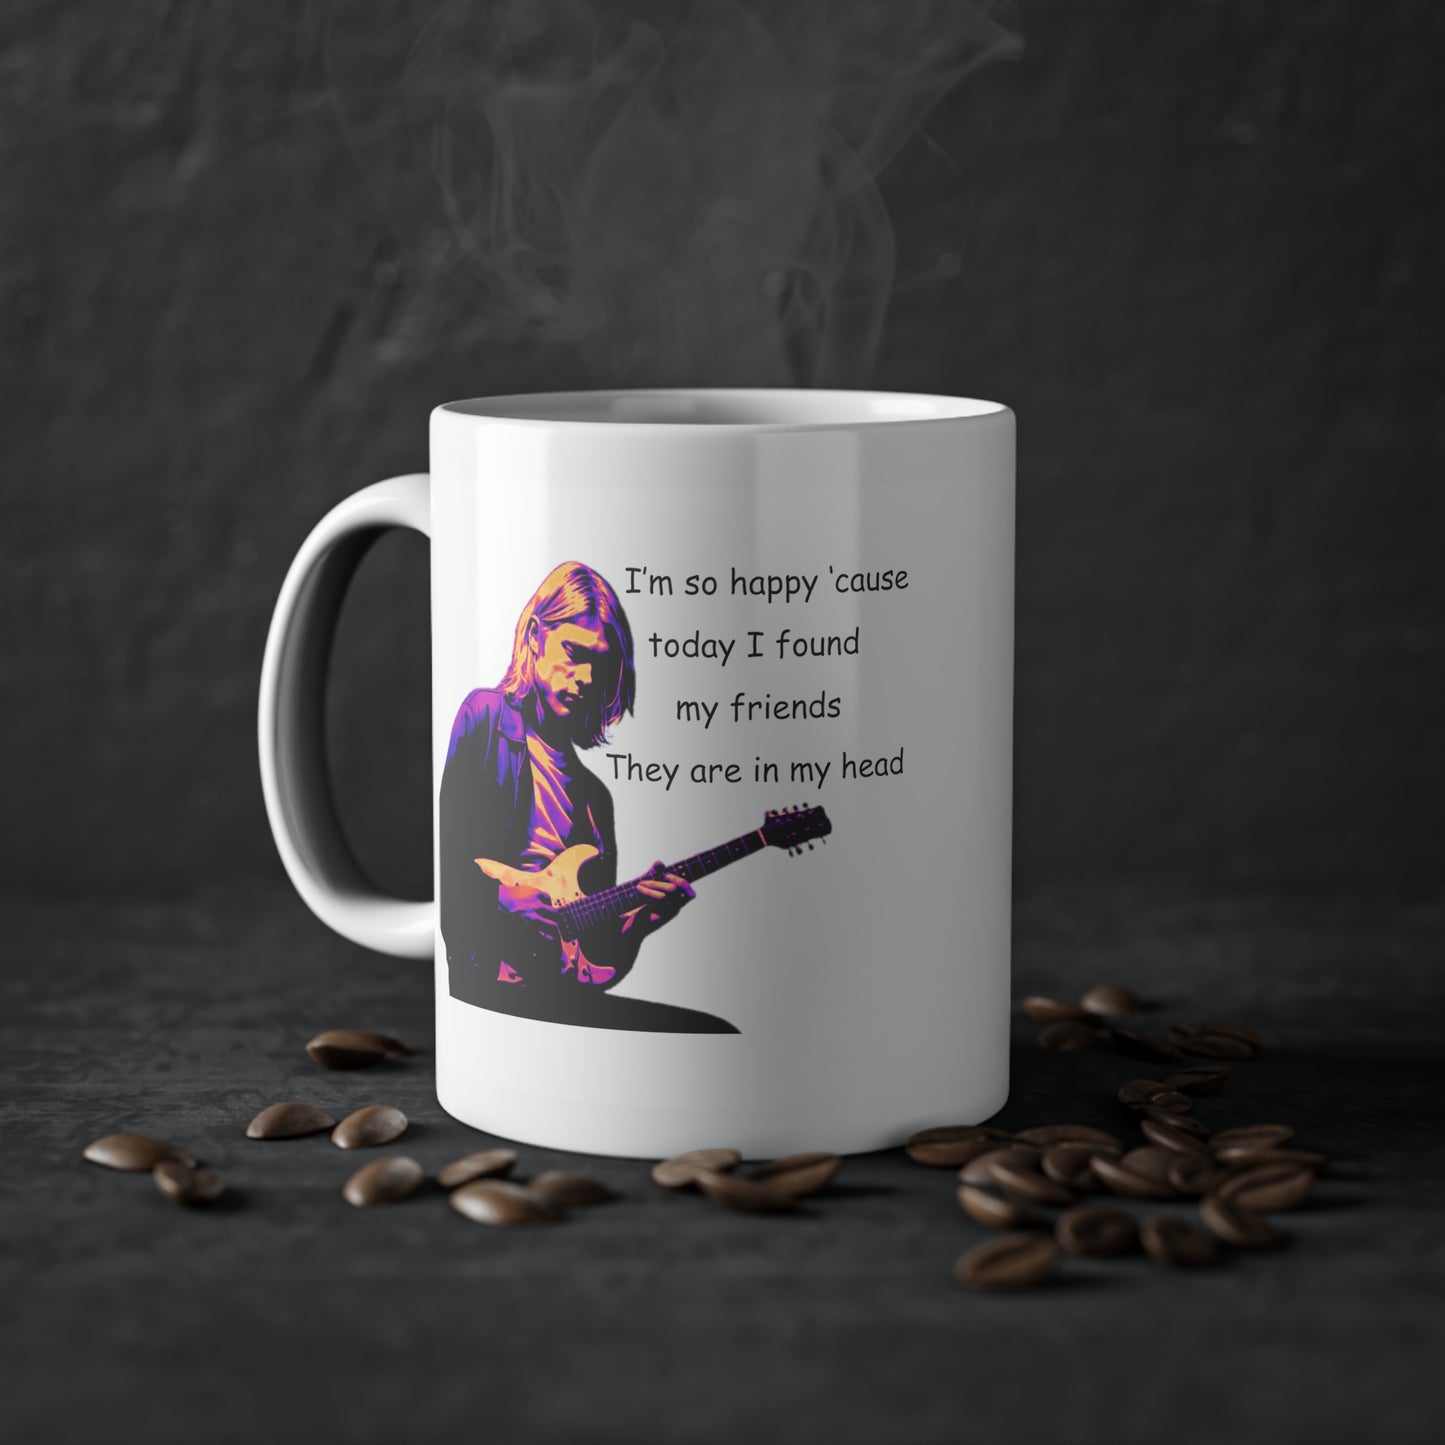 Kurt's Friends - Inspired Mug